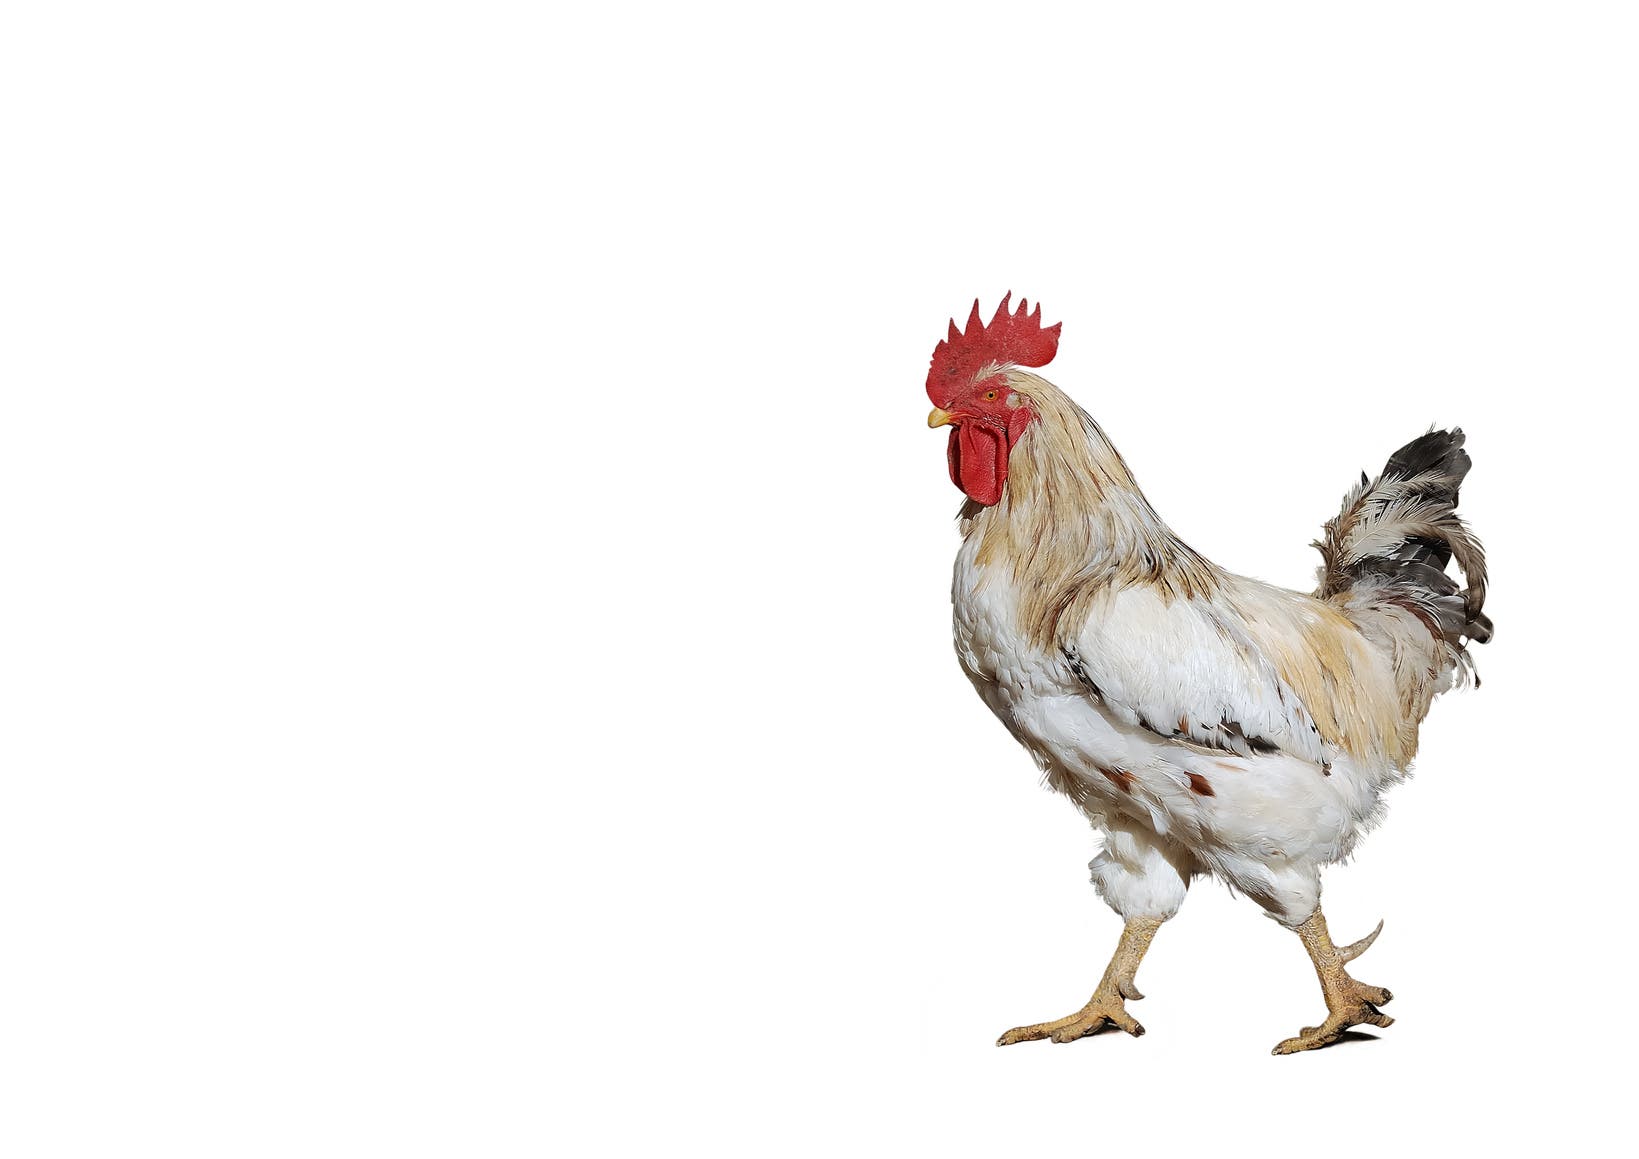 9. Hühner bevorzugen schöne Menschen